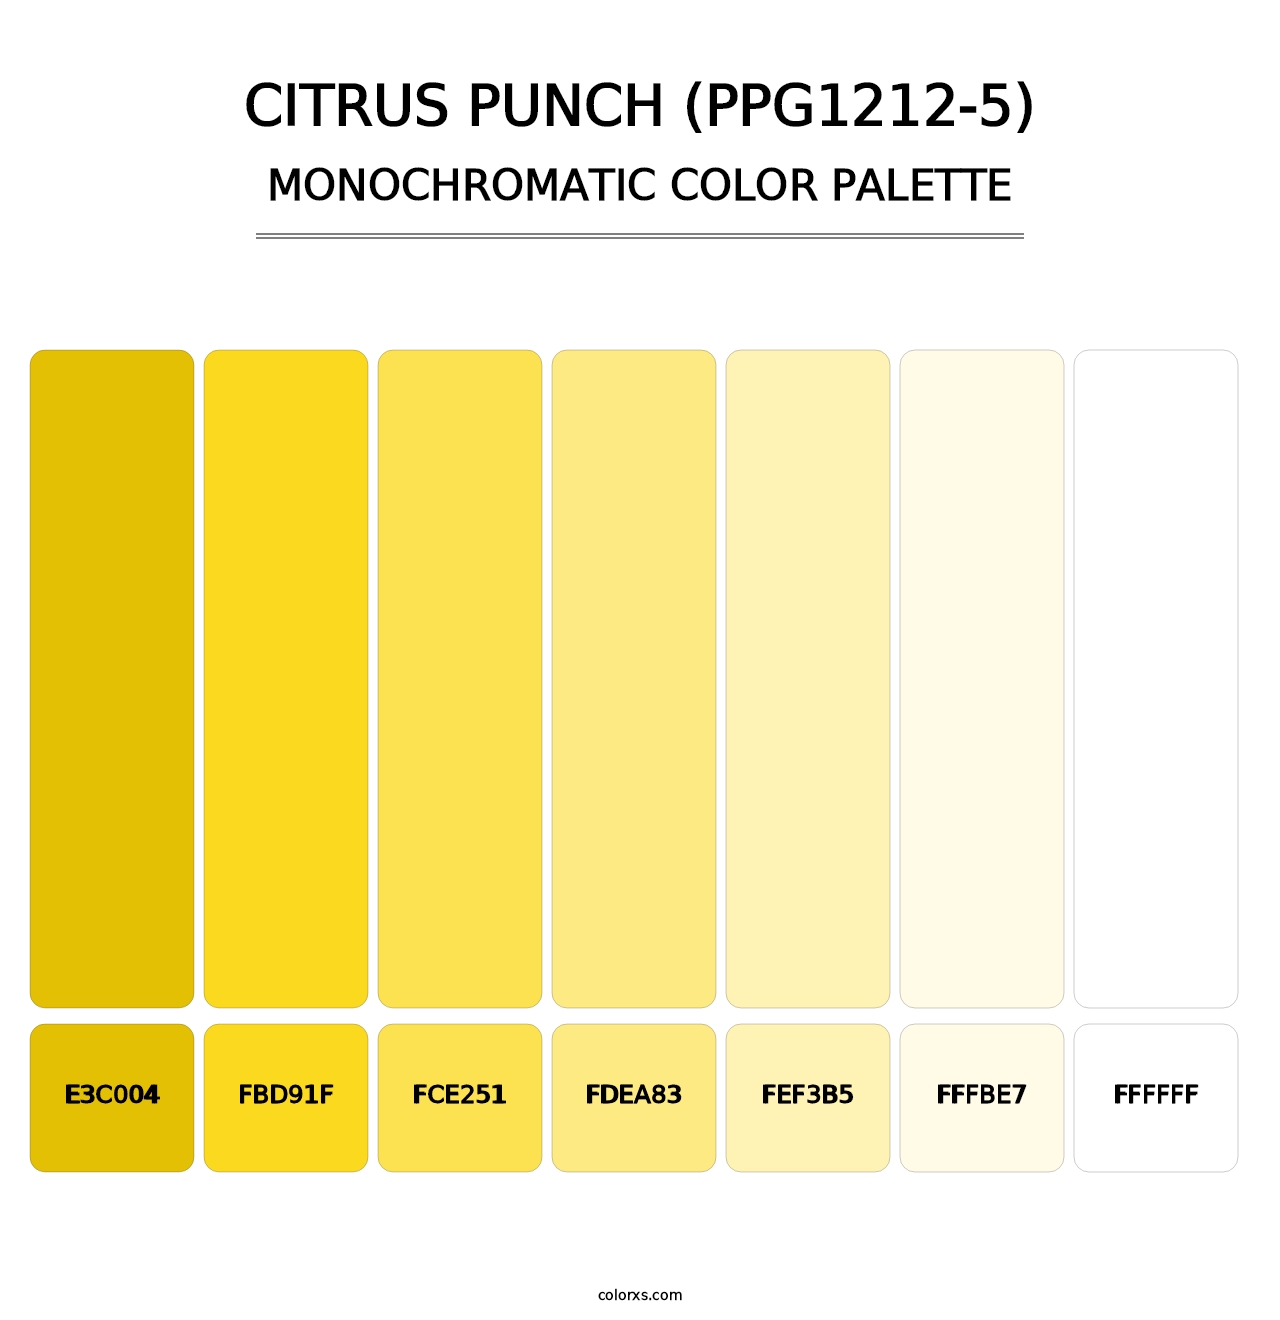 Citrus Punch (PPG1212-5) - Monochromatic Color Palette